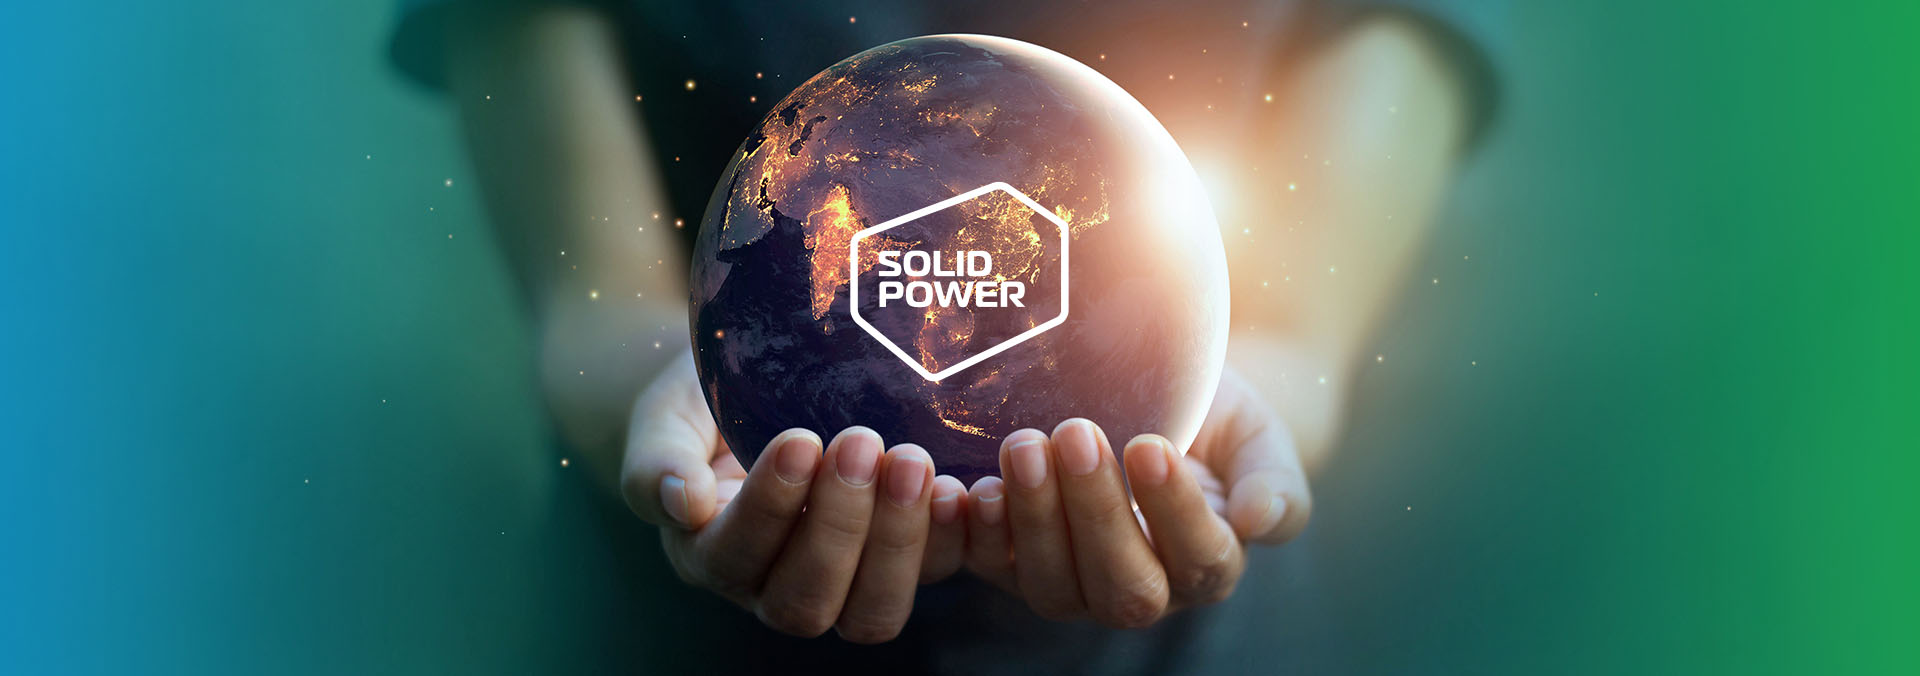 Marketing Kampagne SOLIDpower Header